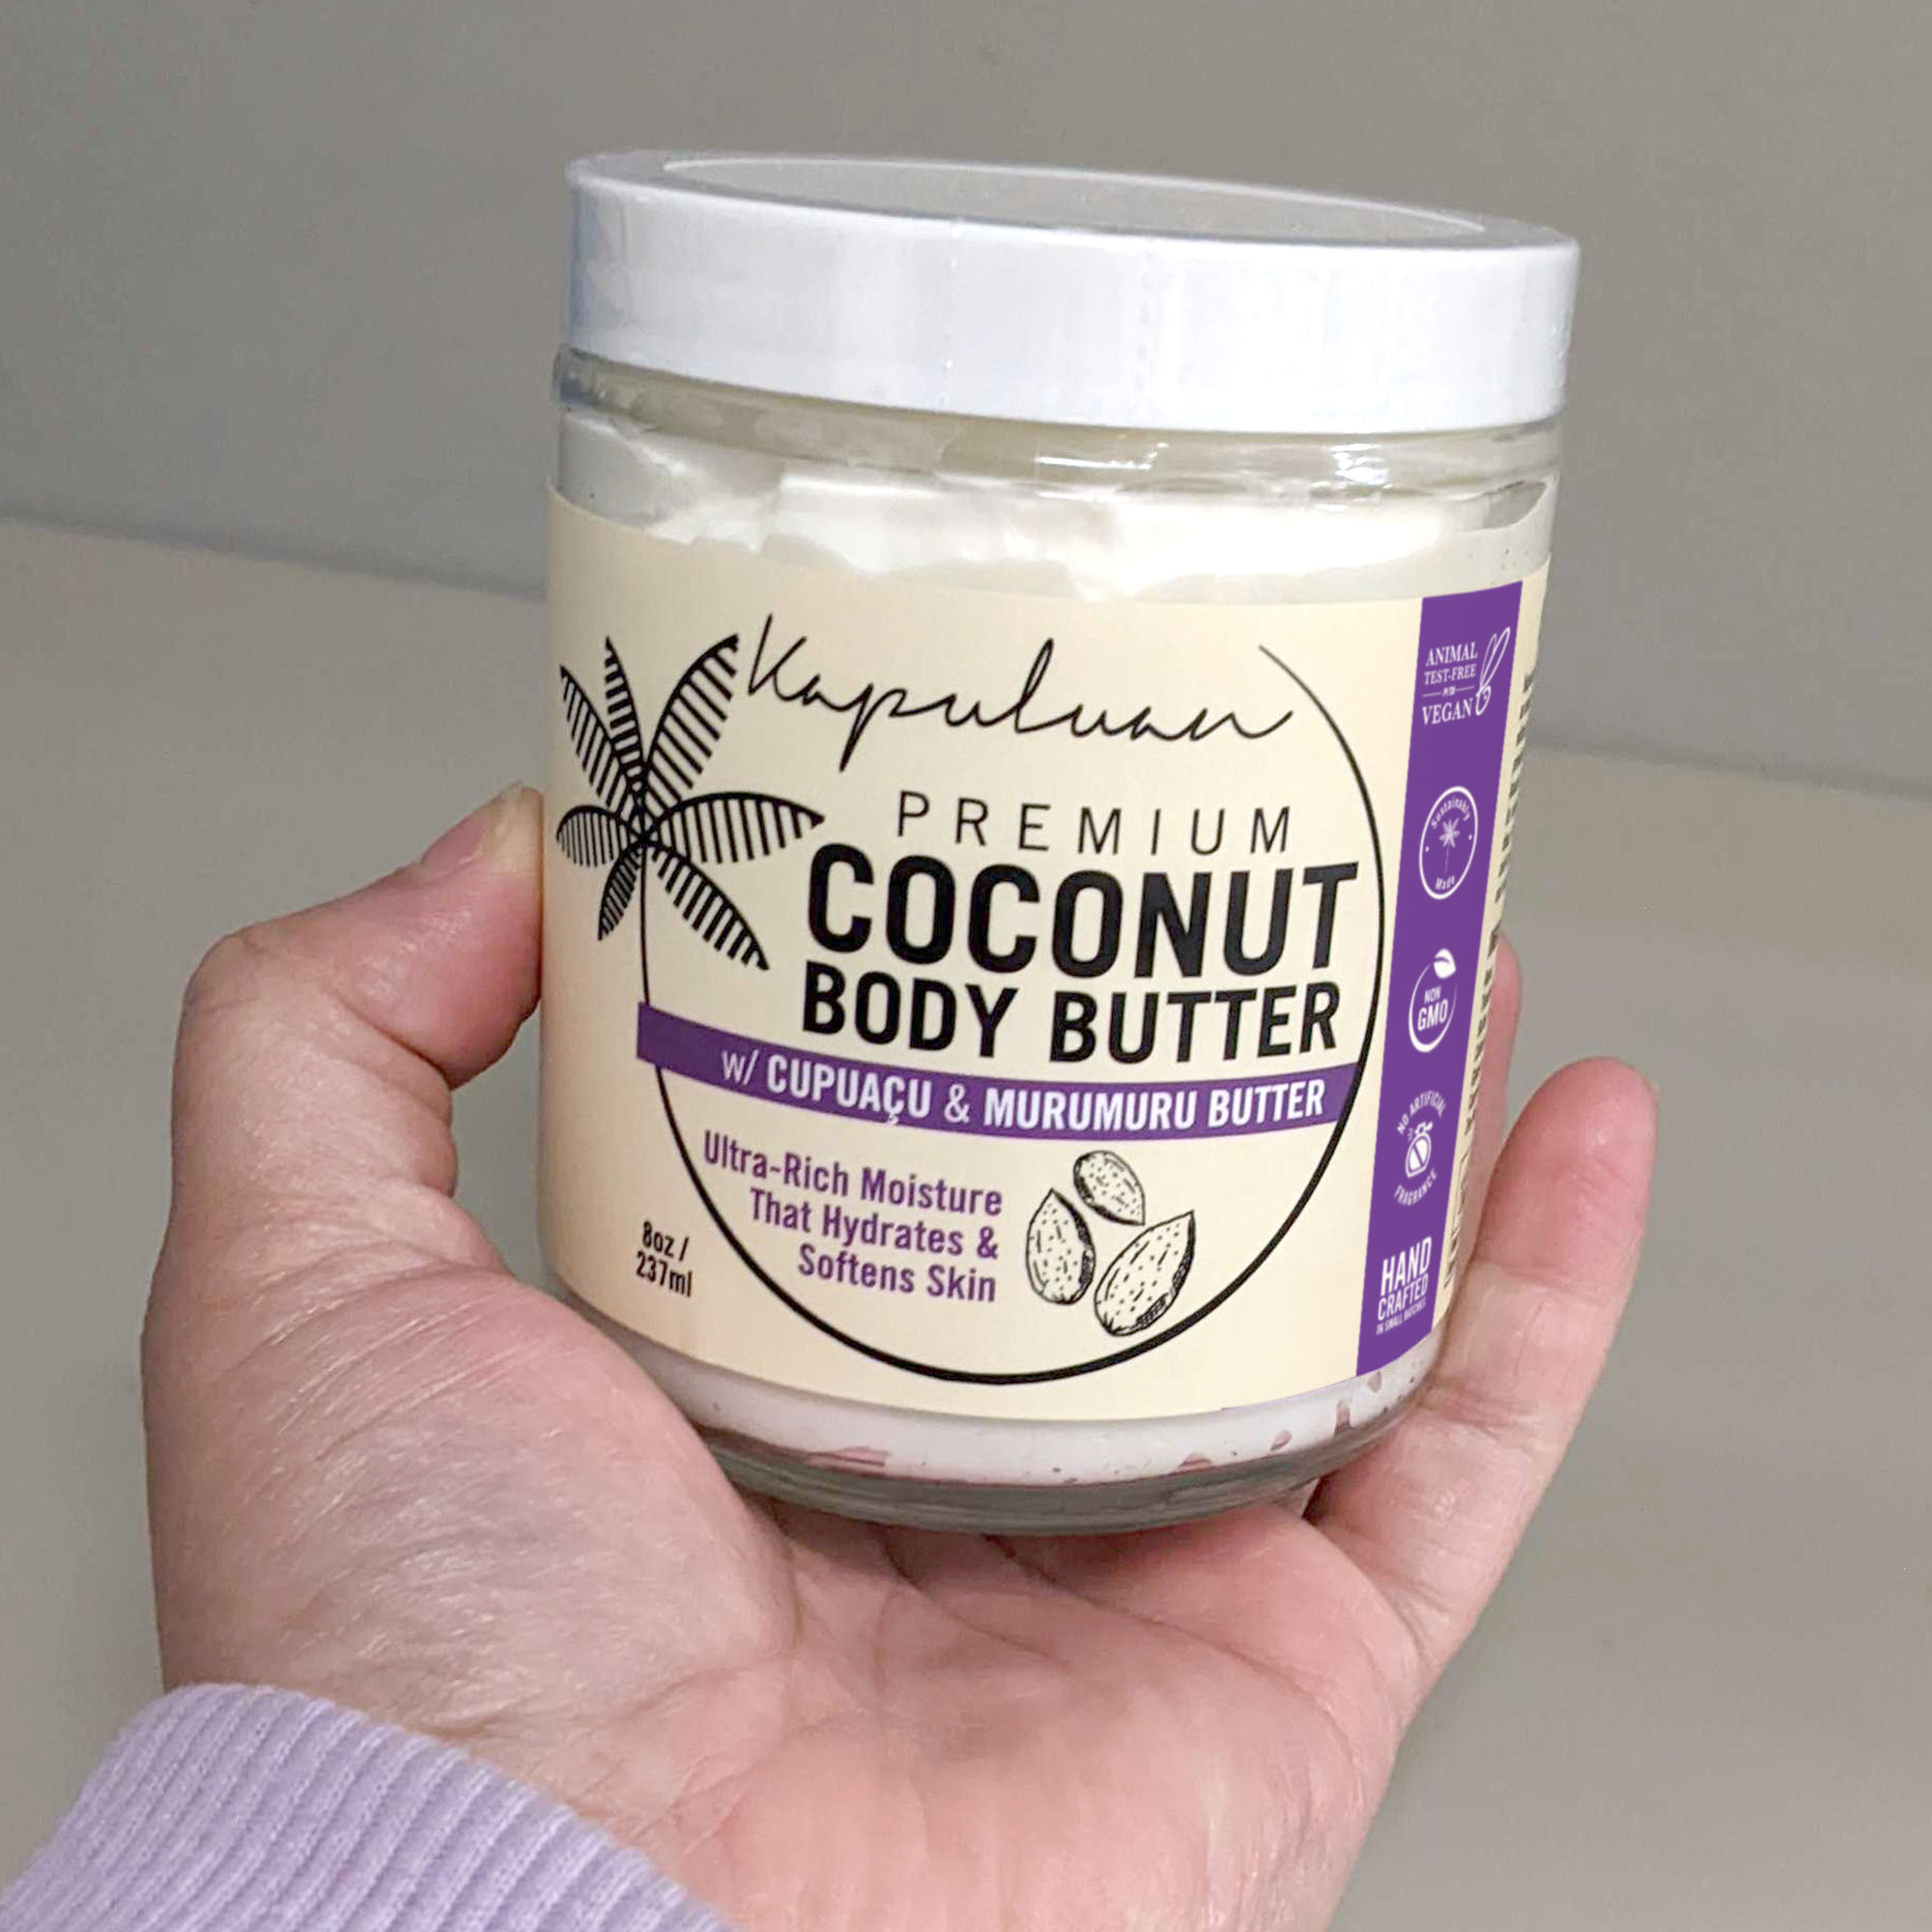 Body Butter w/ Cupuacu & Murumuru - Kapuluan Coconut